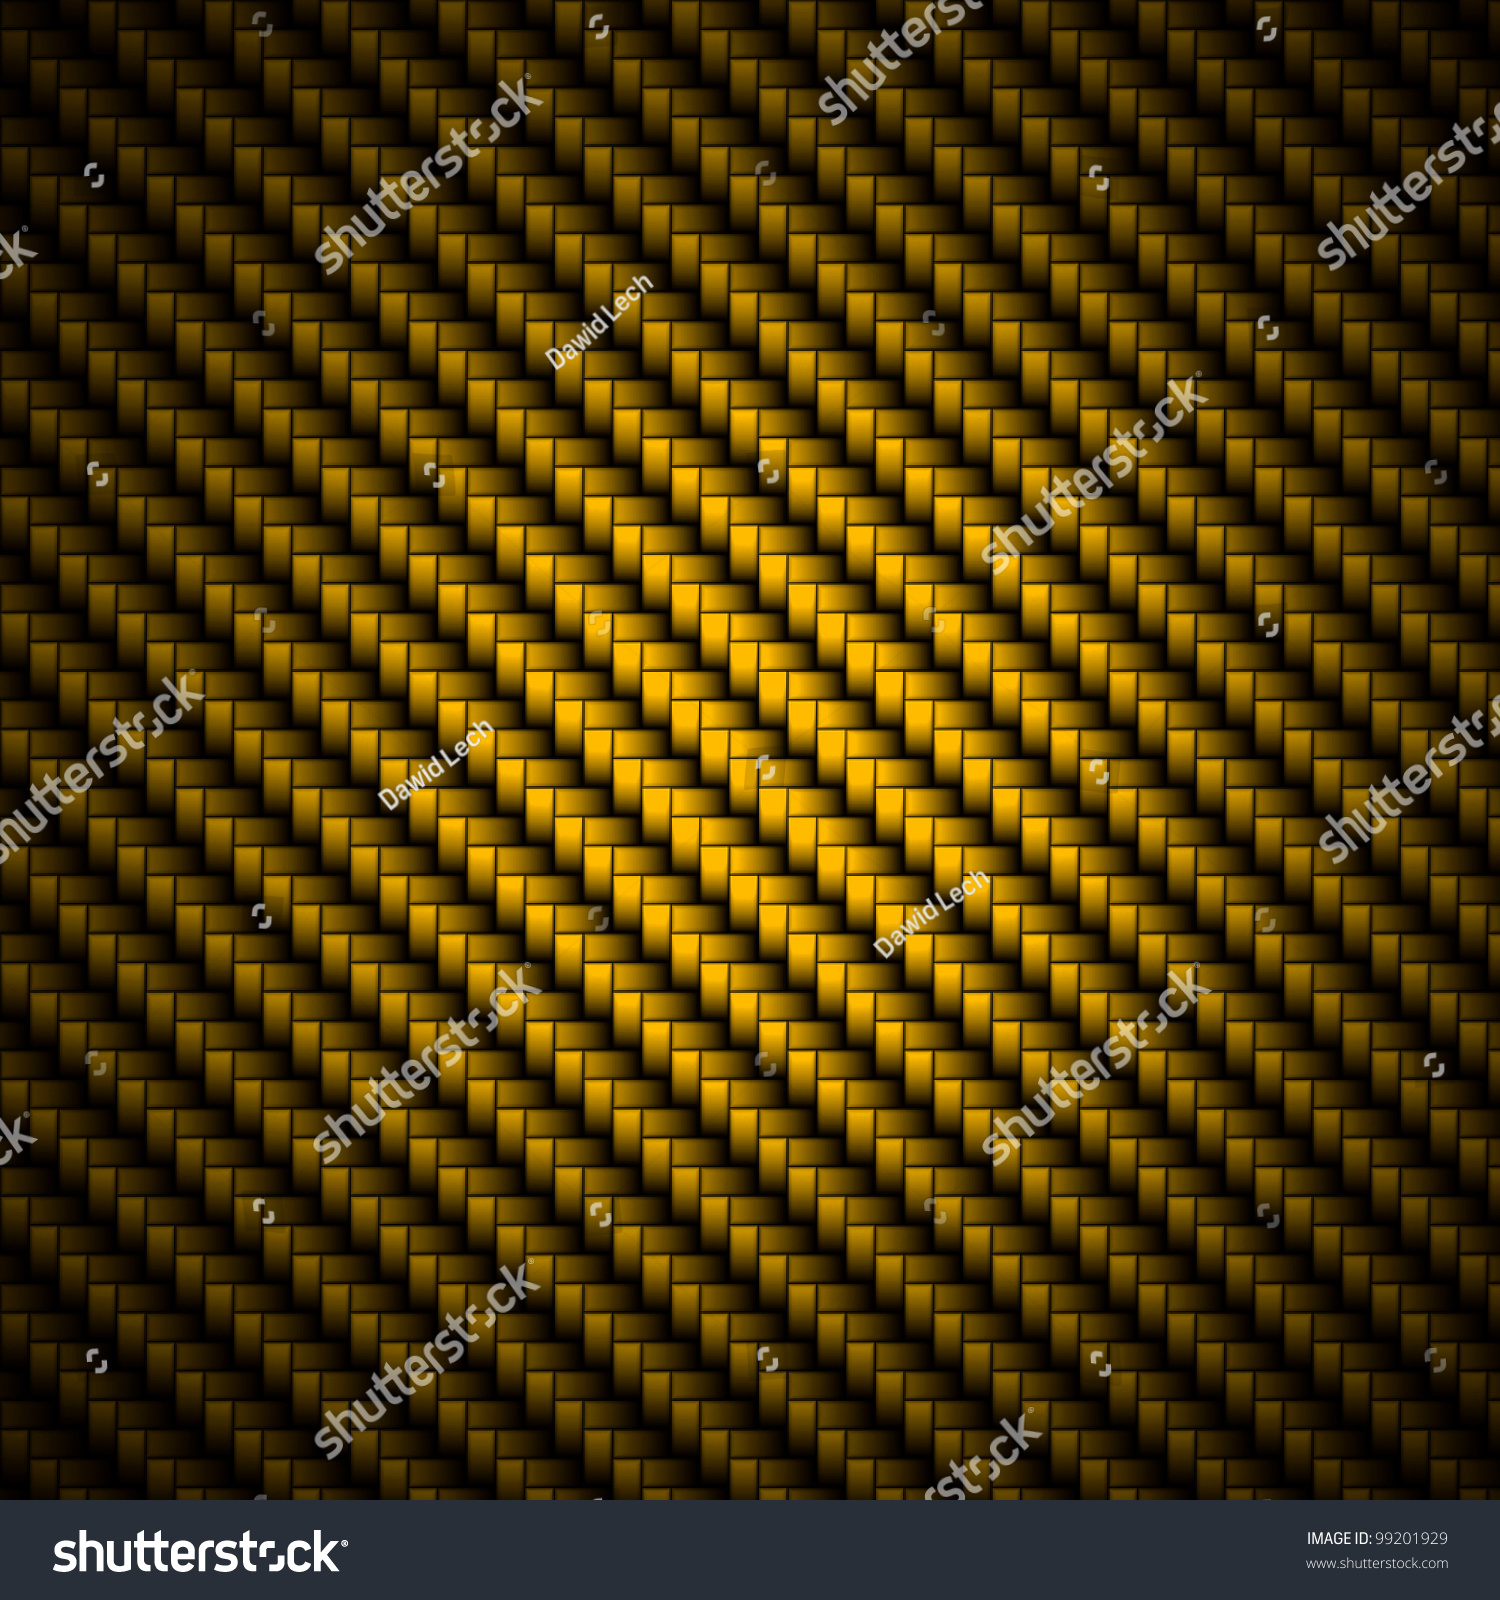 Realistic Golden Carbon Fiber Weave Background Stock Illustration ...